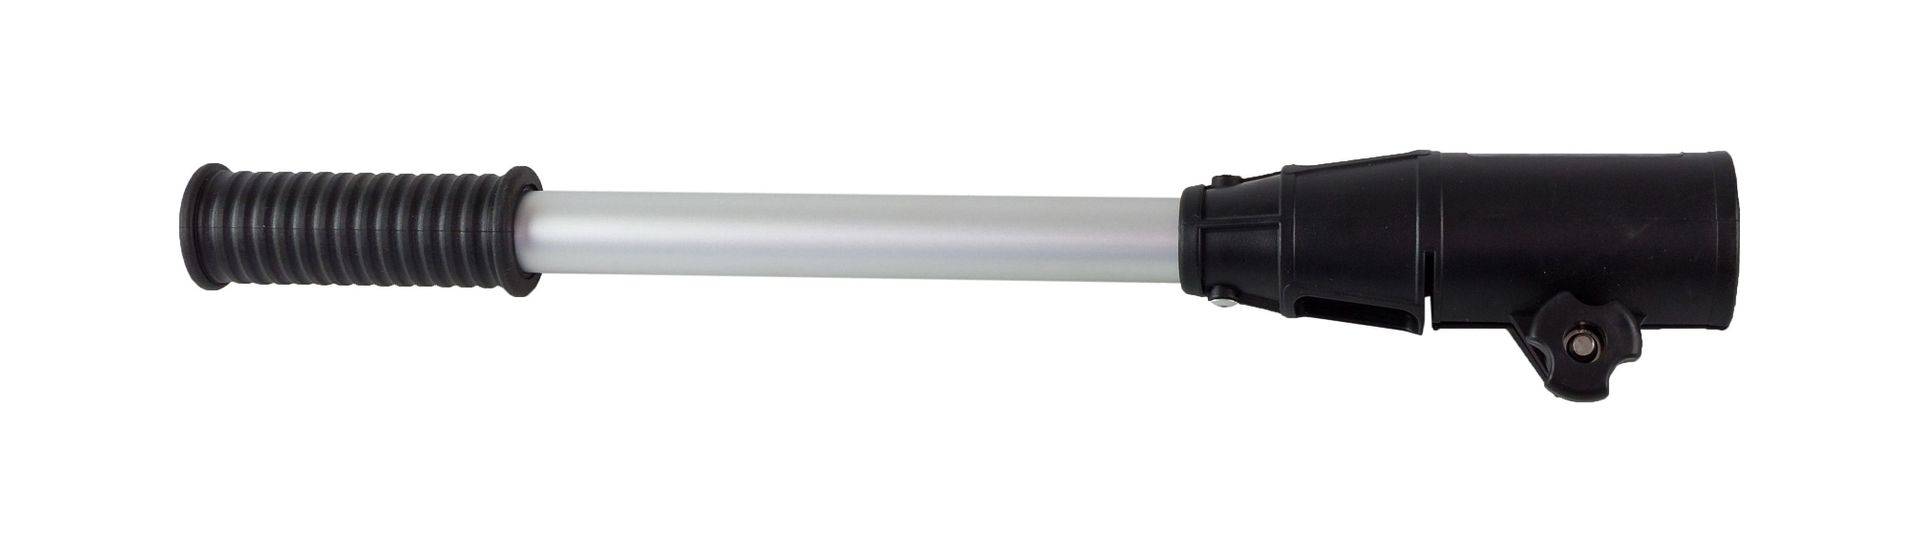 Удлинитель румпеля 46 см C16028 удлинитель румпеля телескопический 61 100 см c16140